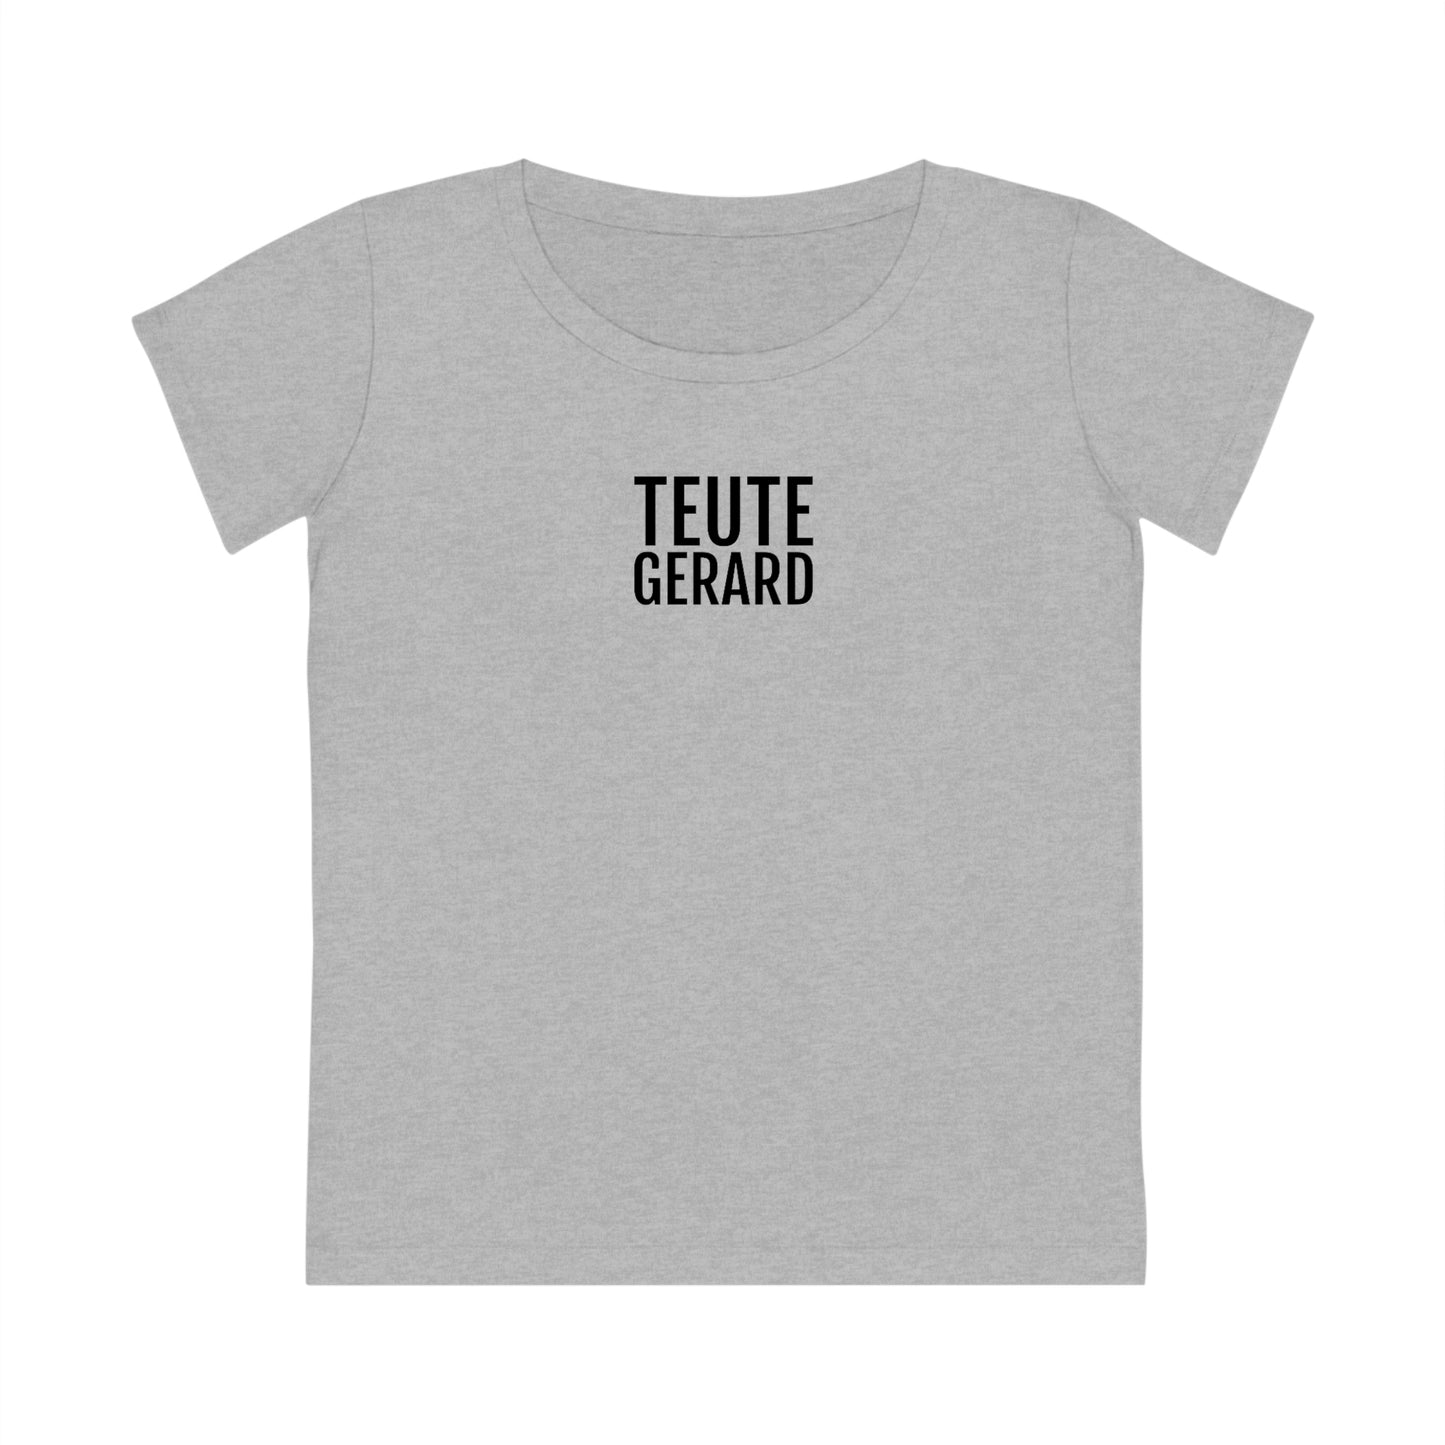 TEUTE GERARD | Dames T-Shirt uit Antwerpen